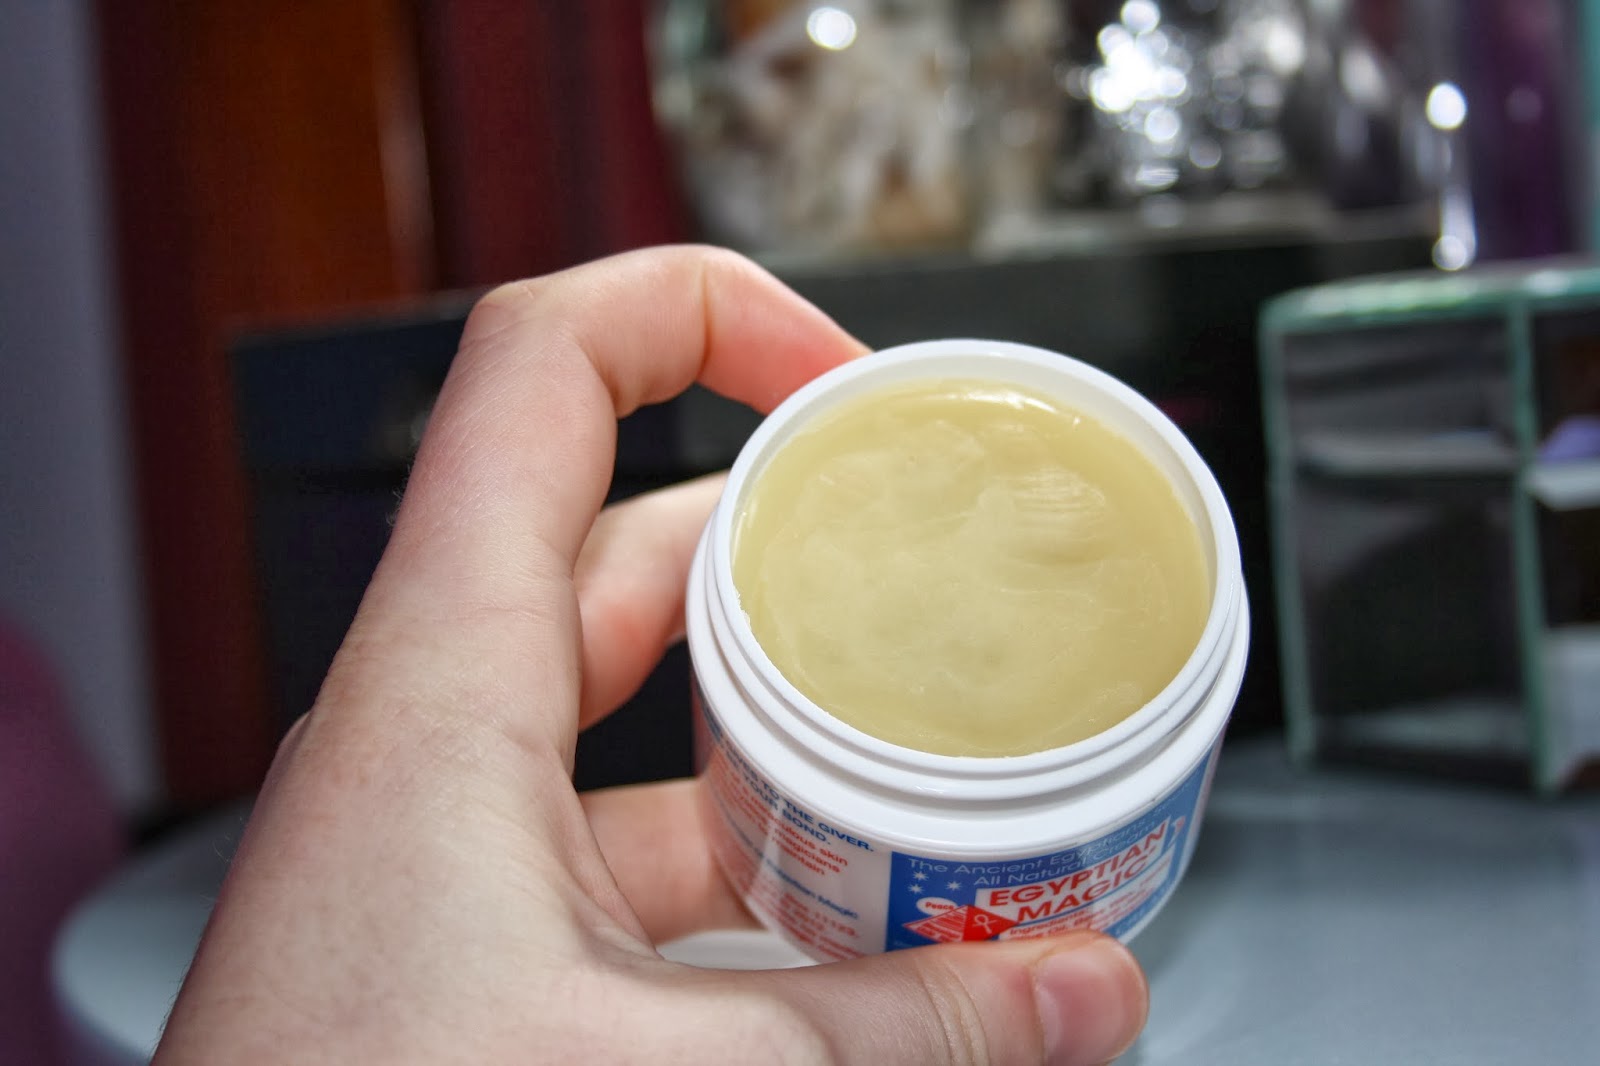 Egyptian Magic Multipurpose cream